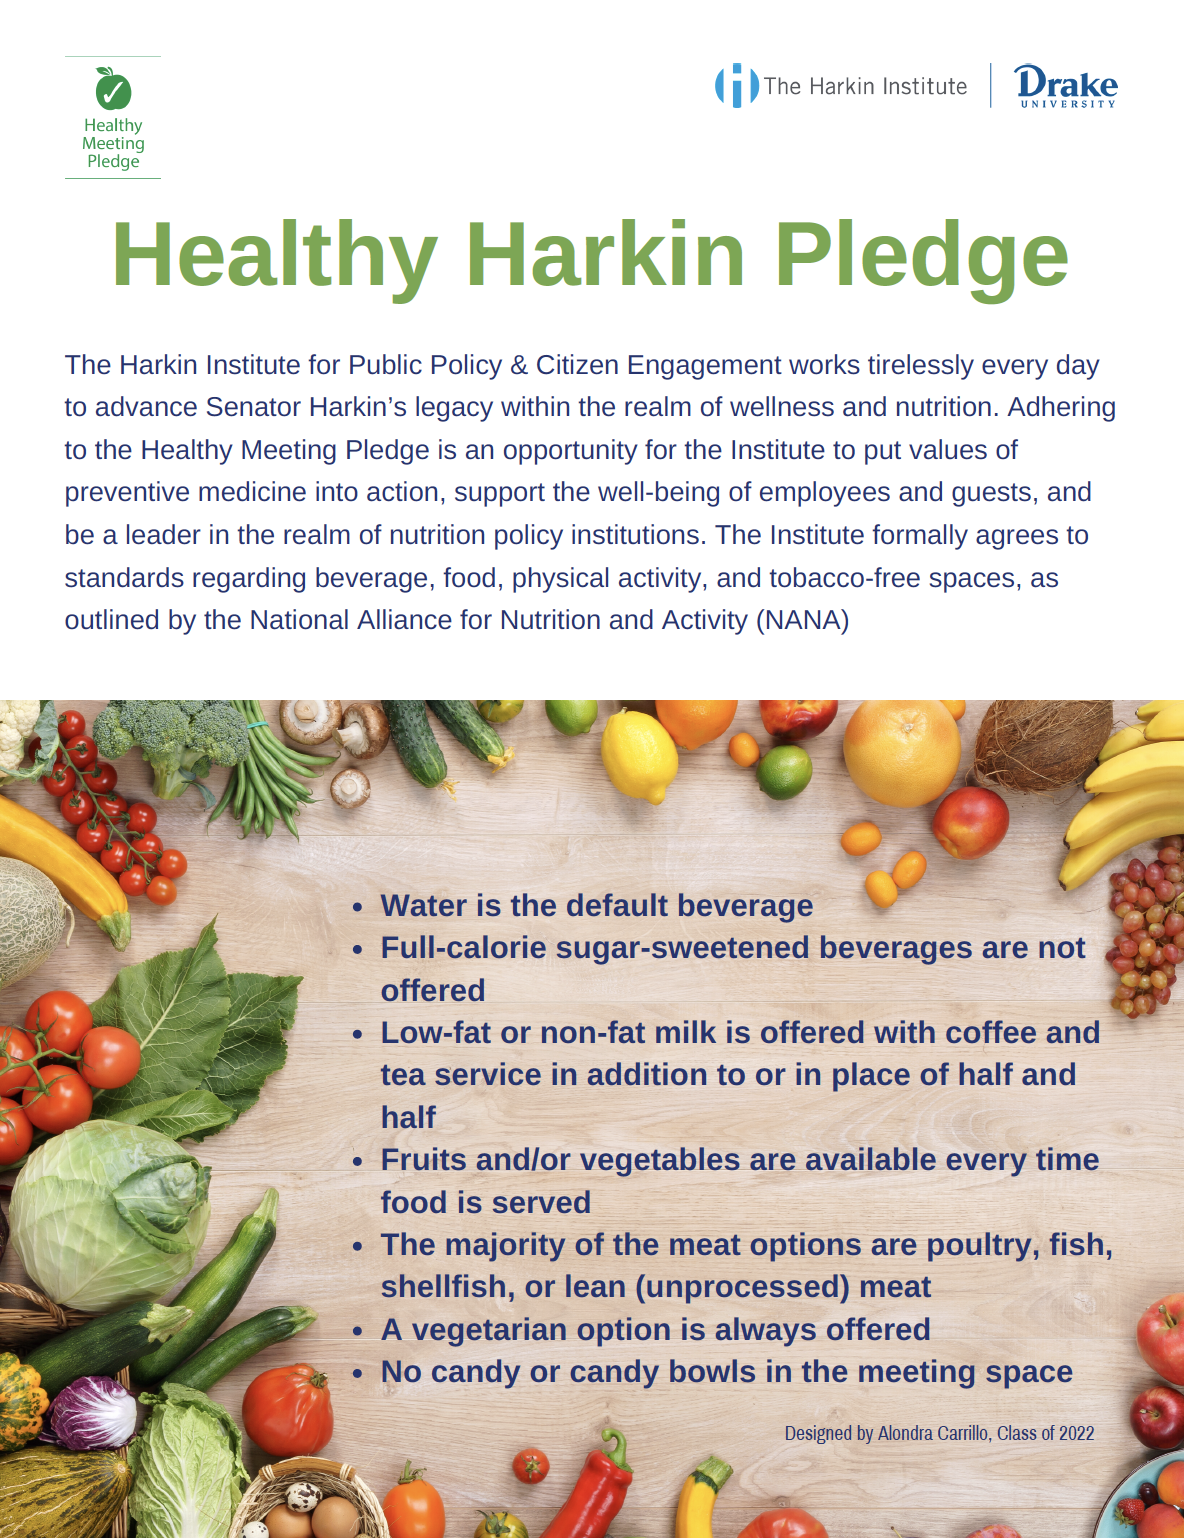 Details of the Healthy Harkin Pledge